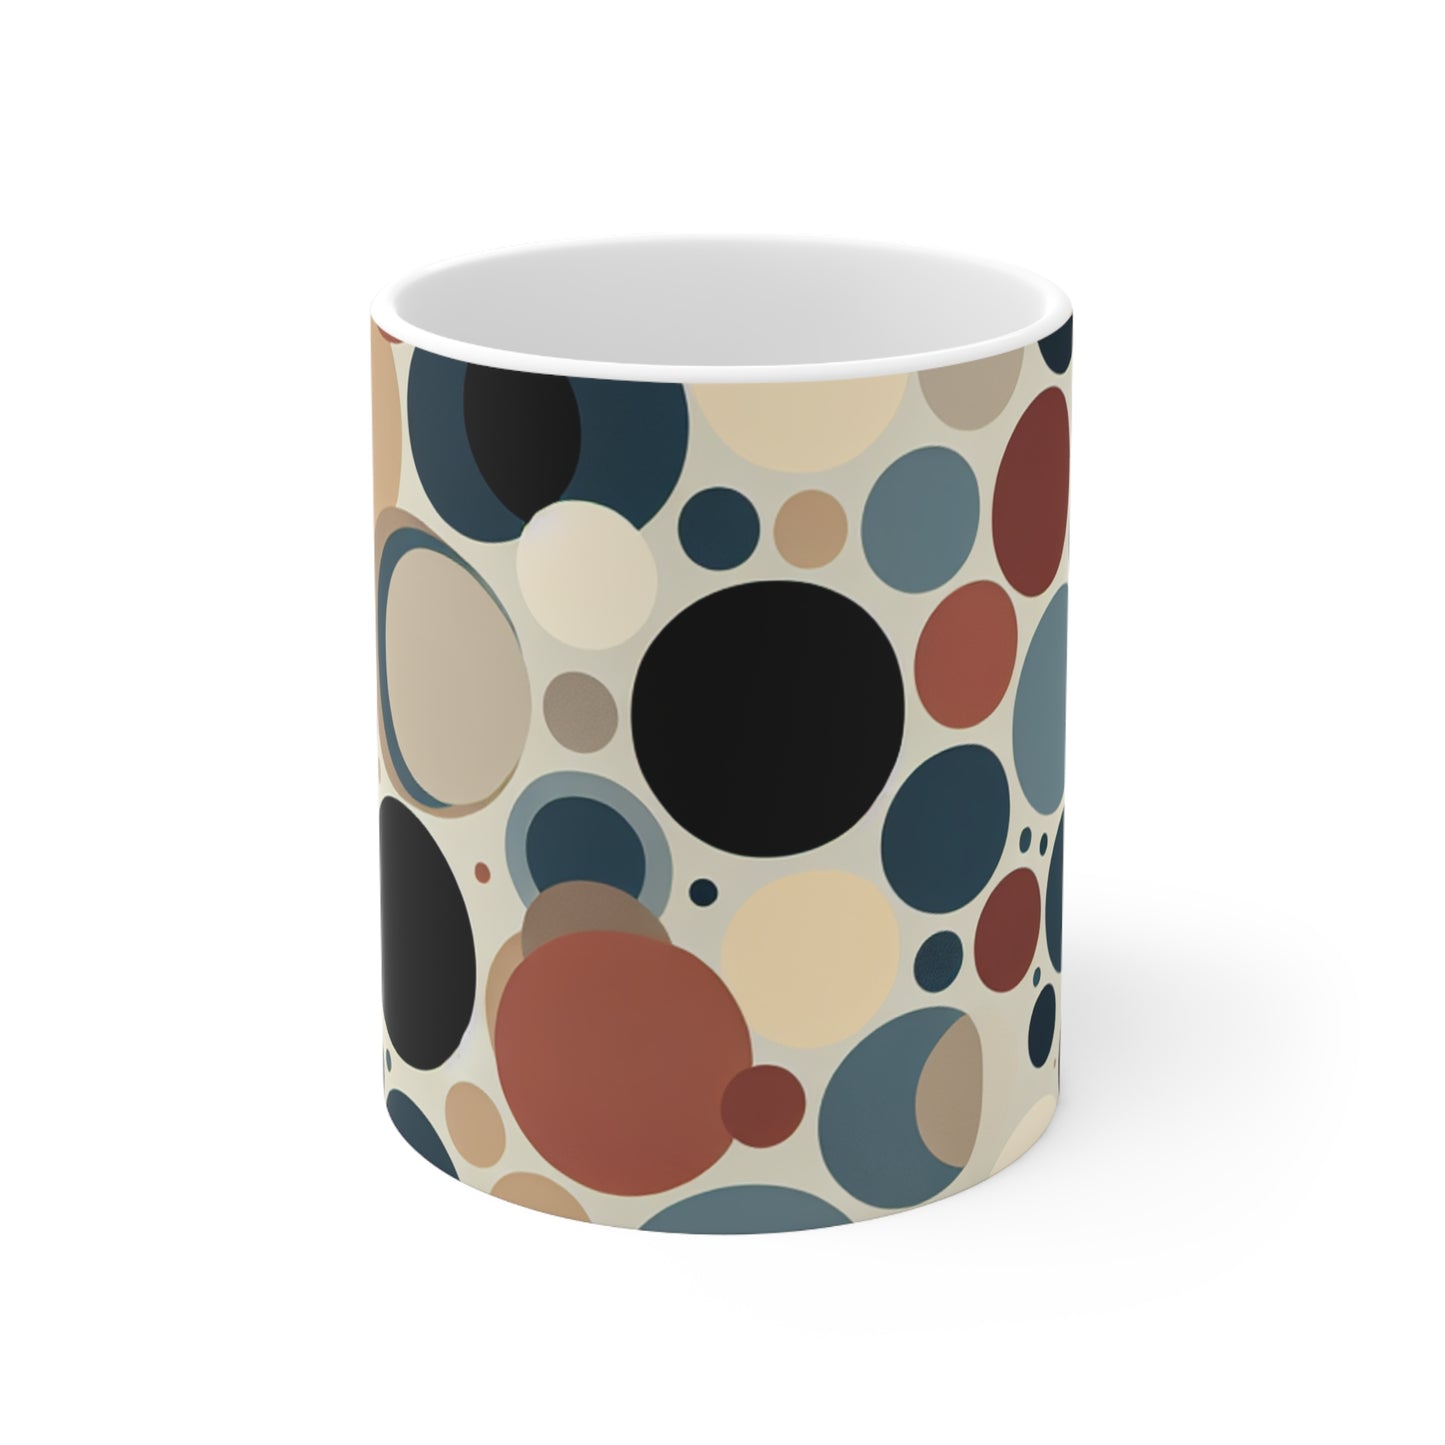 "Cercles entrelacés : une approche minimaliste" - La tasse en céramique Alien 11oz Style minimalisme